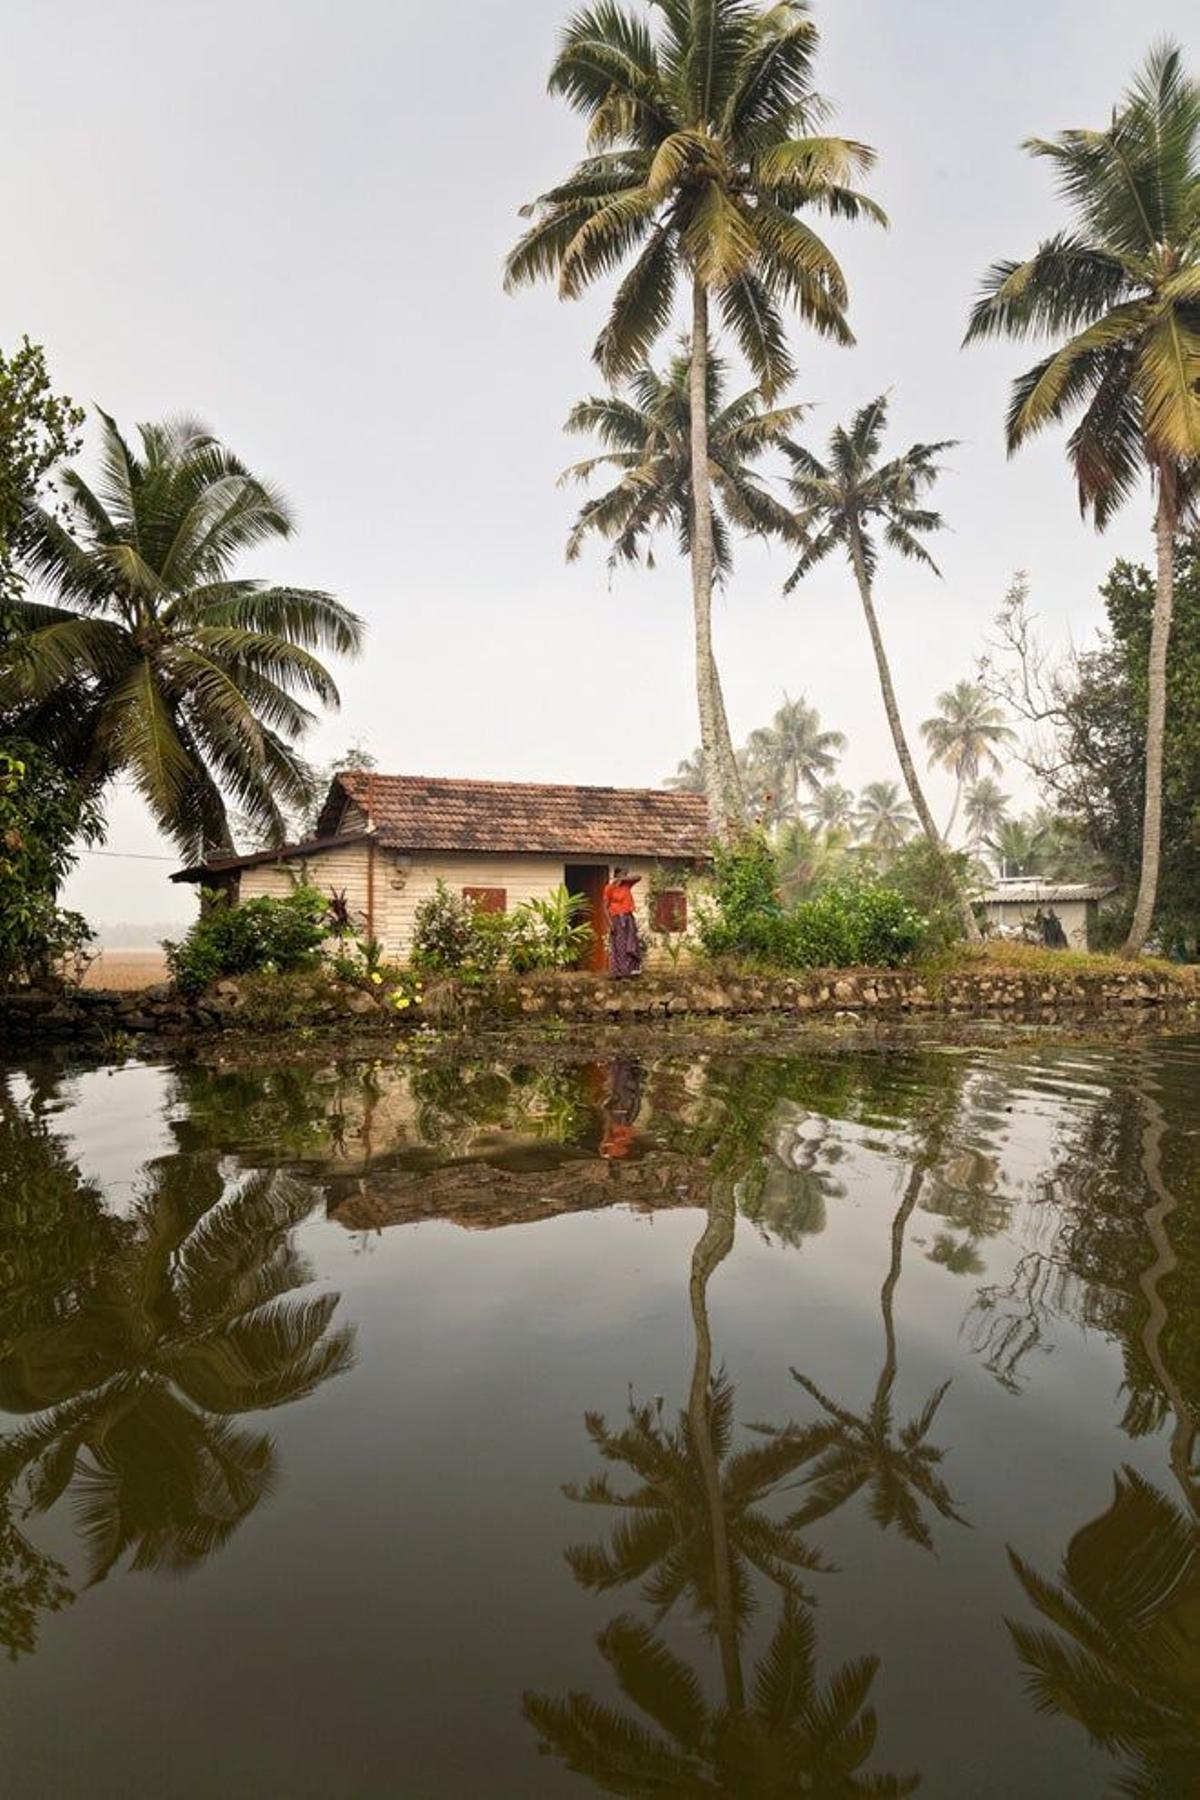 Paisaje típico en los backwaters de Kerala.